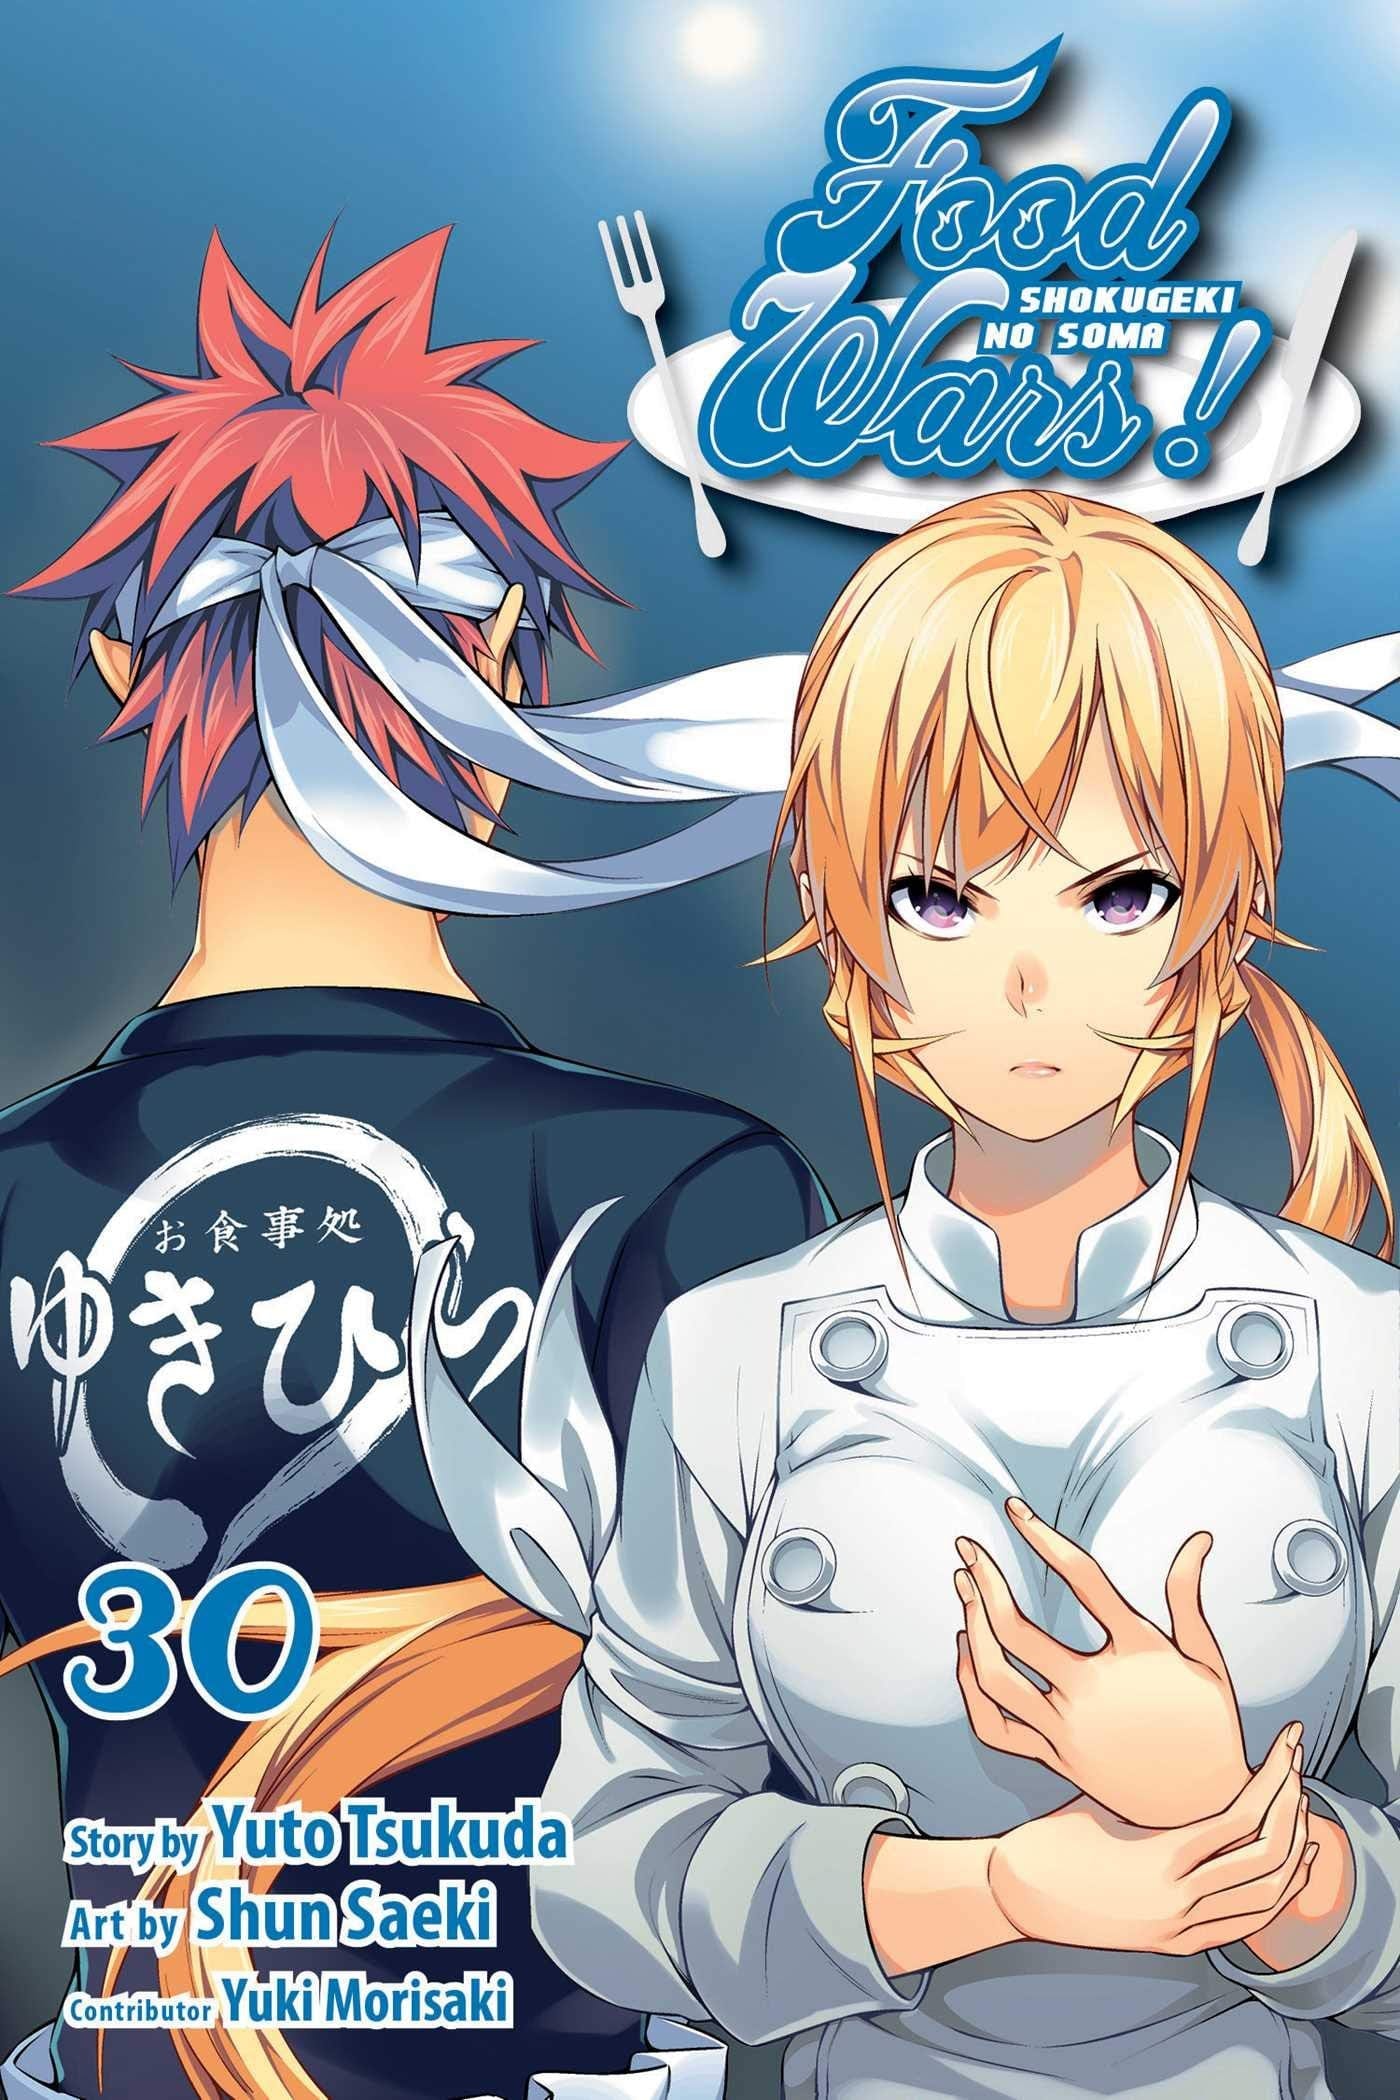 Food Wars!: Shokugeki no Soma Vol. 30 - Third Eye